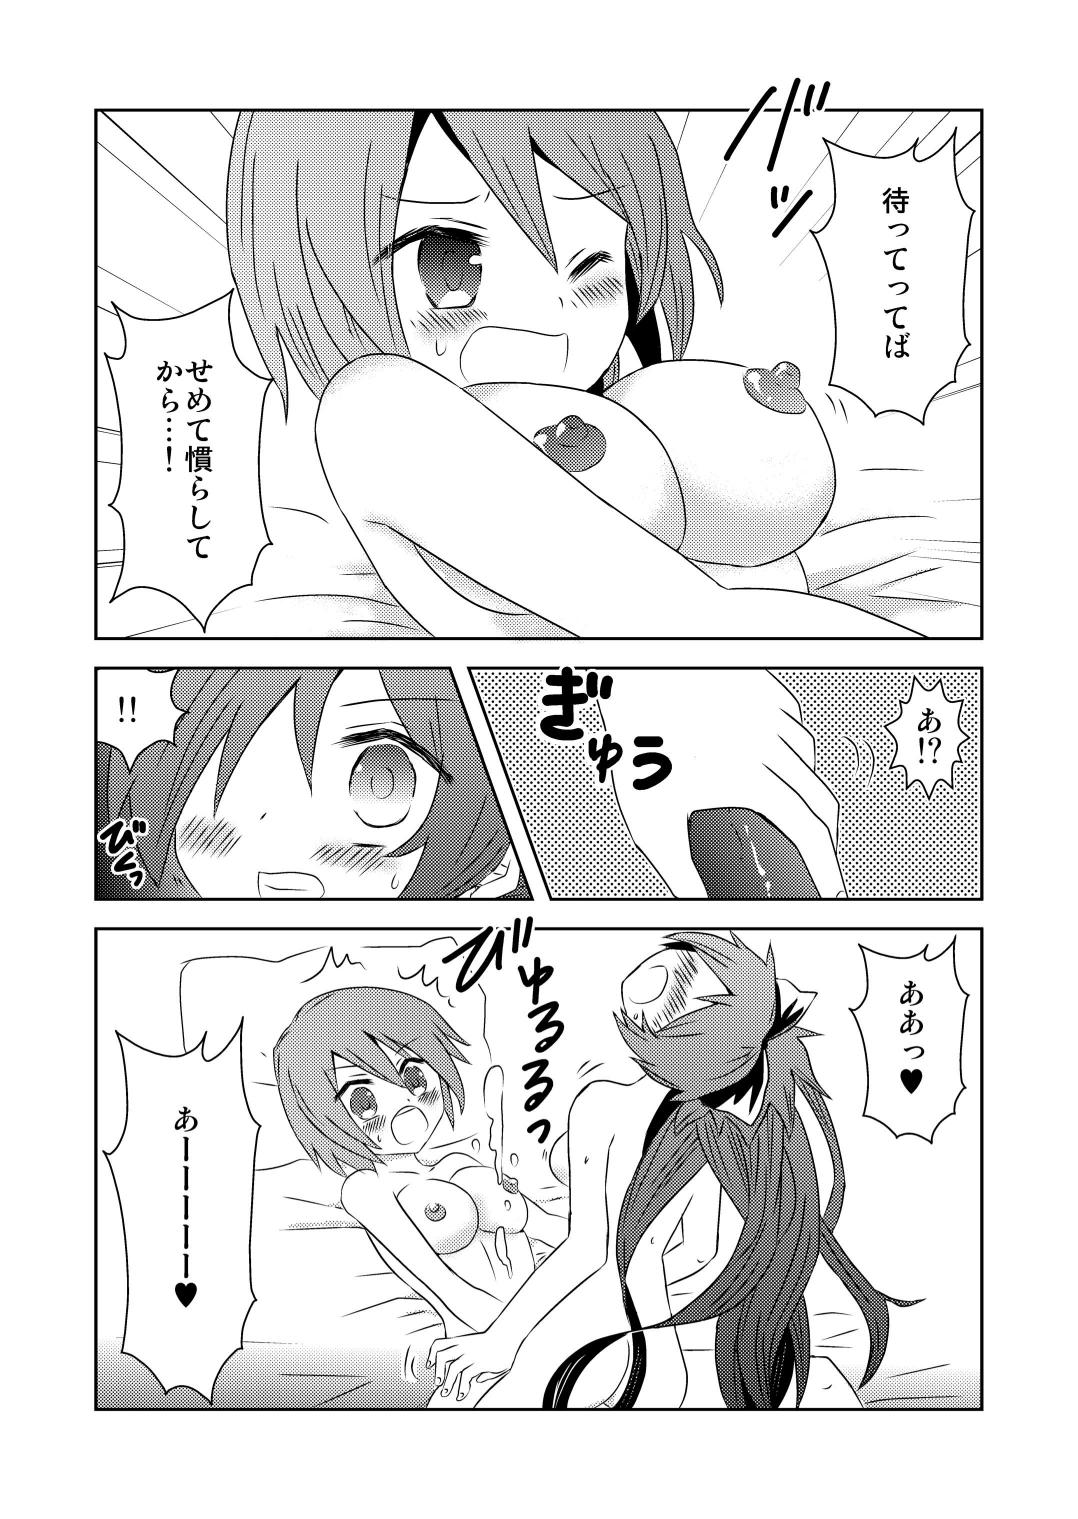 Ball Busting Tsunagaru Mahou - Puella magi madoka magica Cums - Page 8